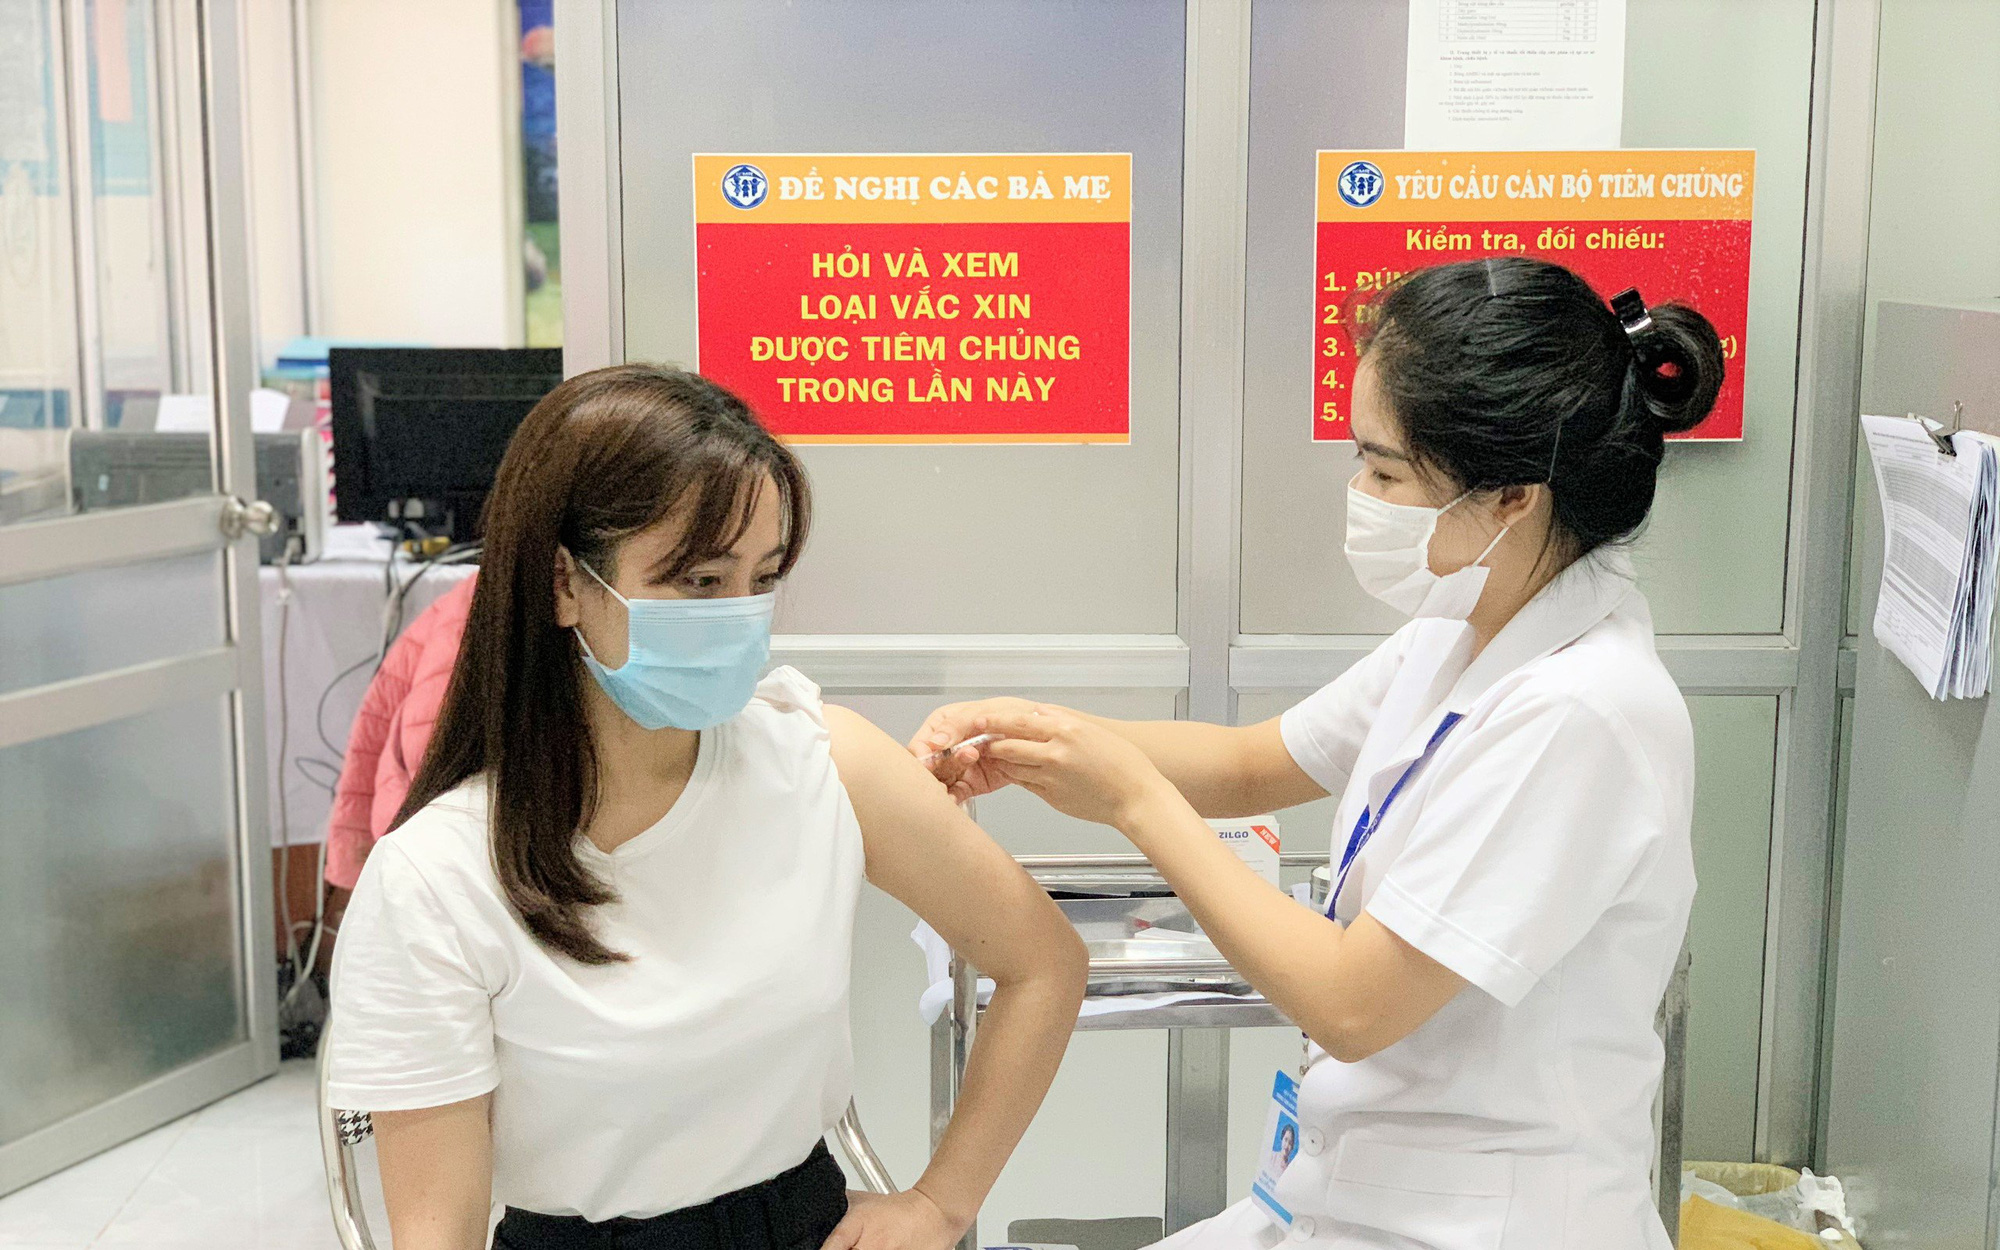 Chiều 23/10: Đã tiêm trên 72,2 triệu liều vaccine phòng COVID-19; Tây Ninh, Quảng Bình ghi nhận thêm nhiều F0